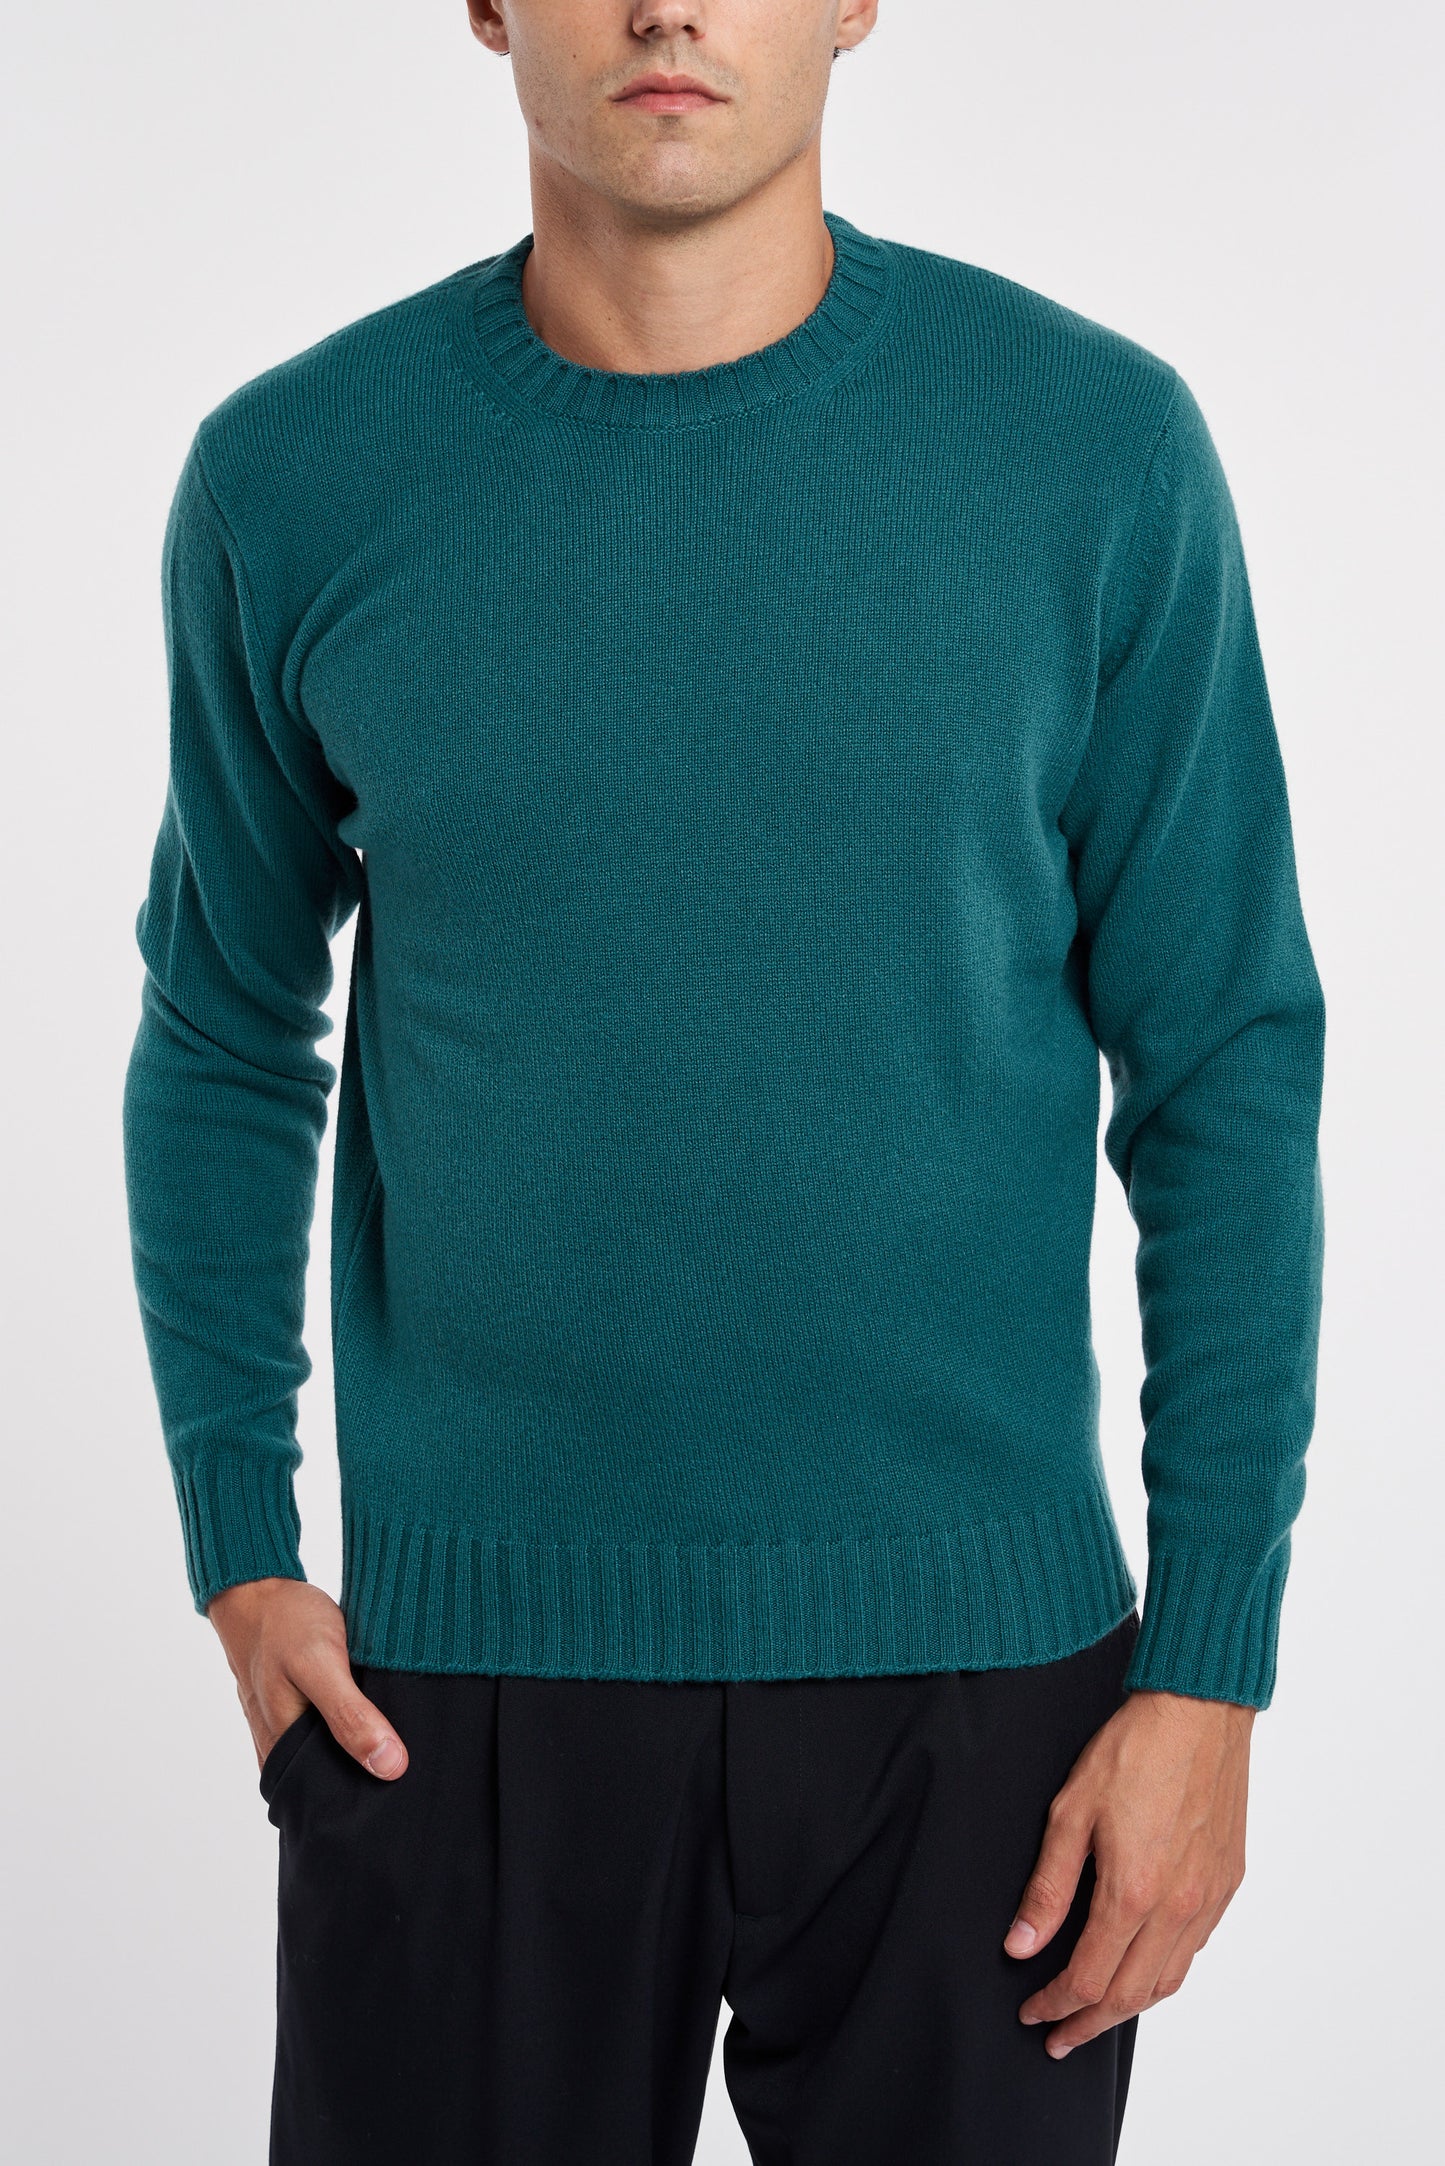  Filippo De Laurentiis 100% Wv Multicolor Sweater Verde Uomo - 1